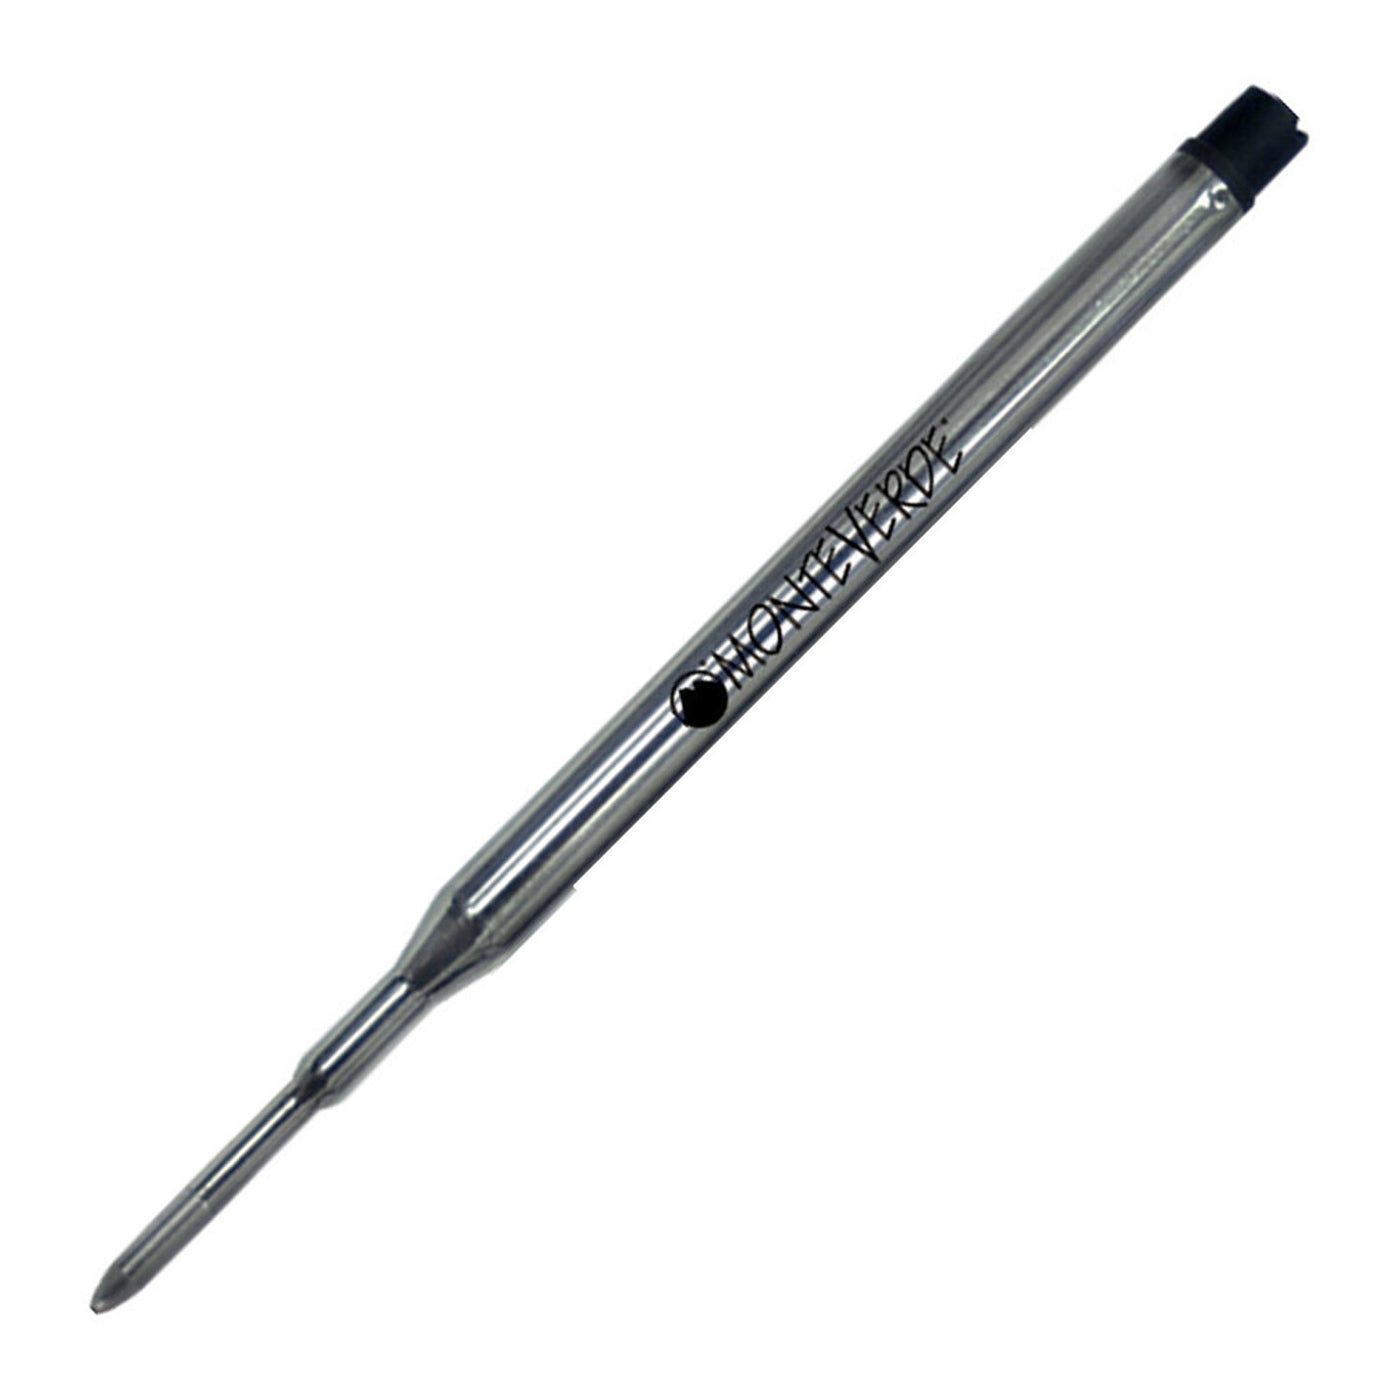 Monteverde Ball Pen Refill for Sheaffer - Medium - Red - Pack of 2 2